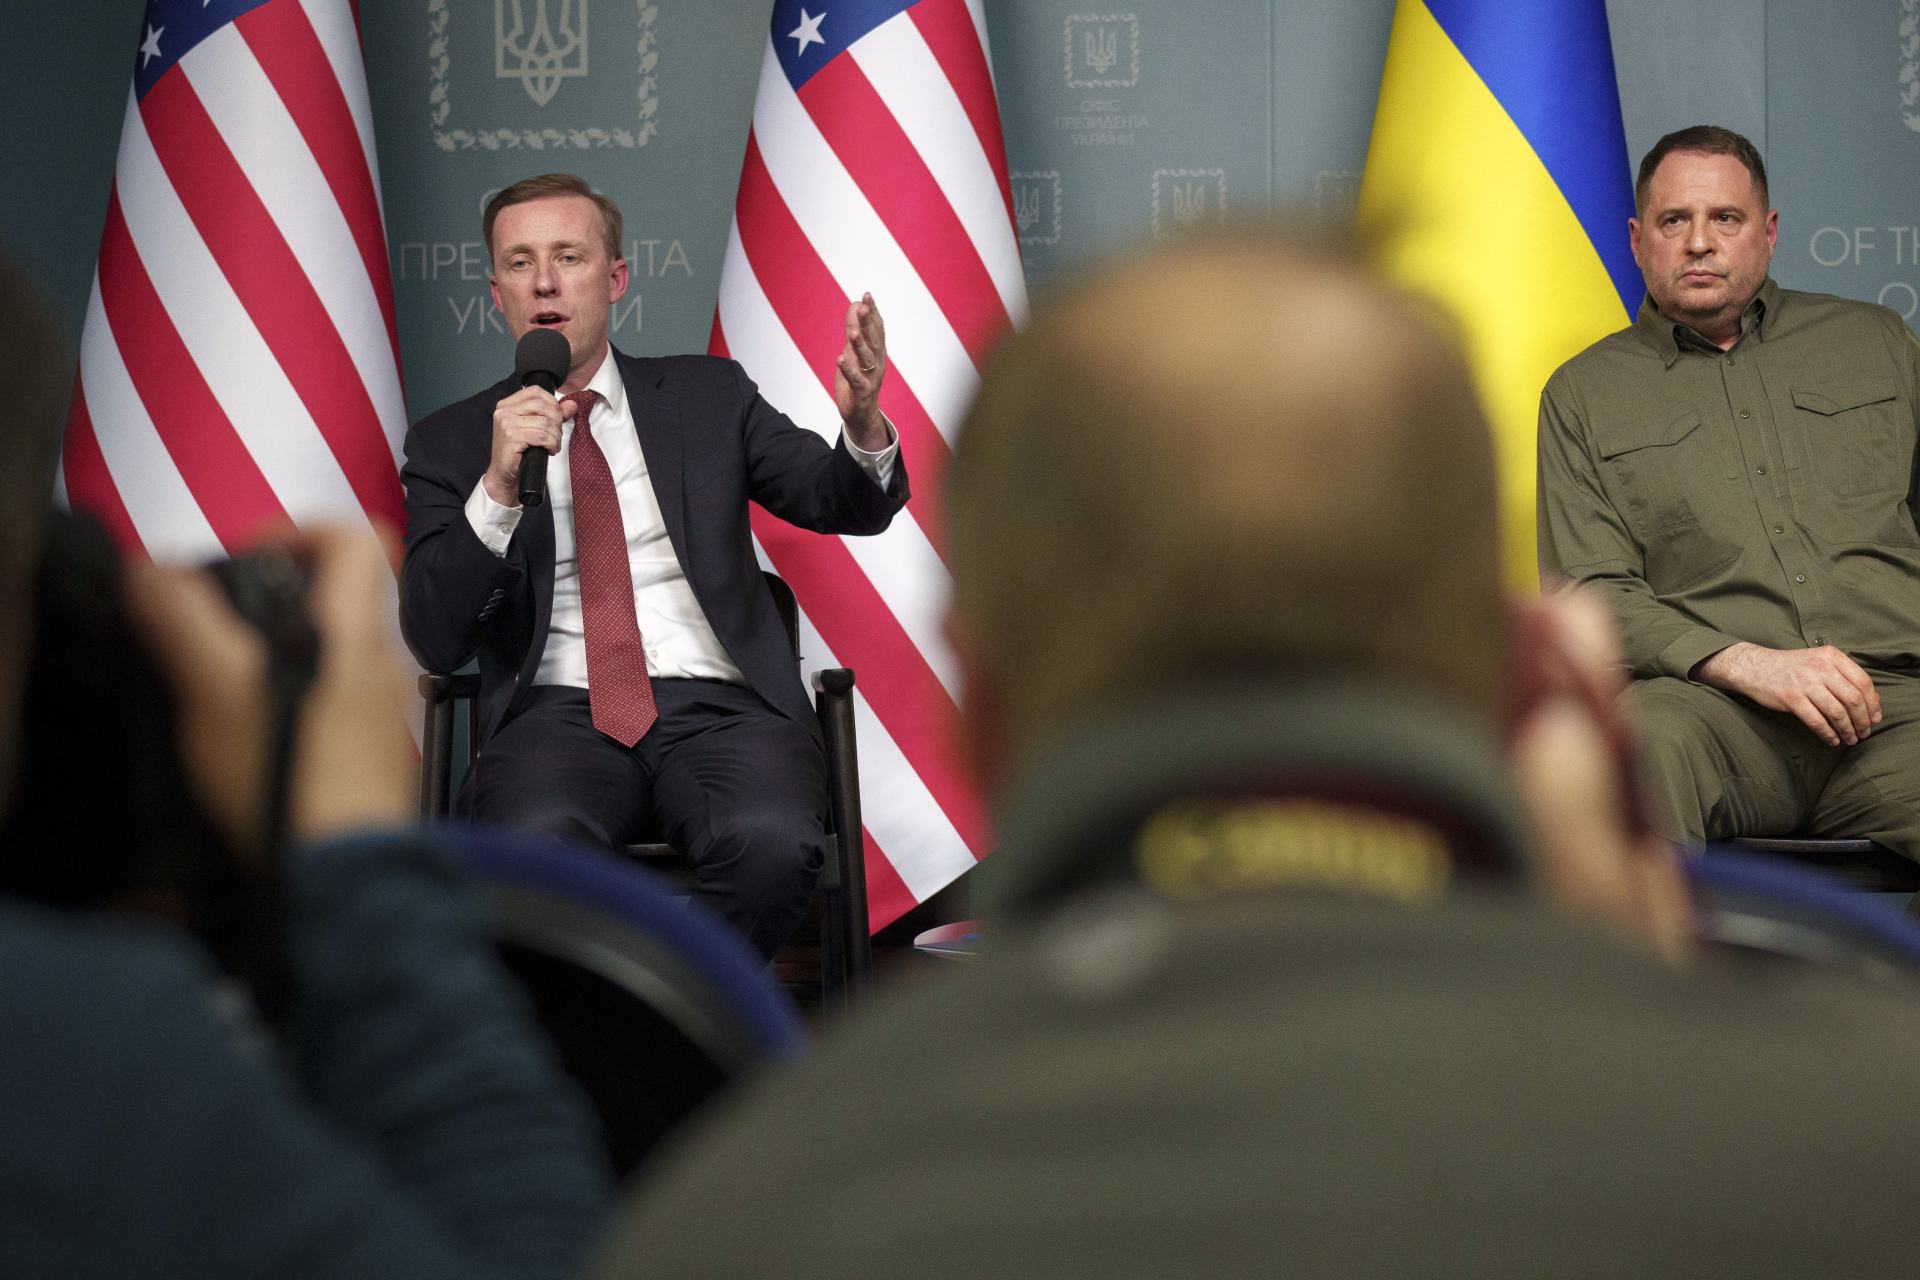  Ukrajina USA Rusko boje diplomacie 